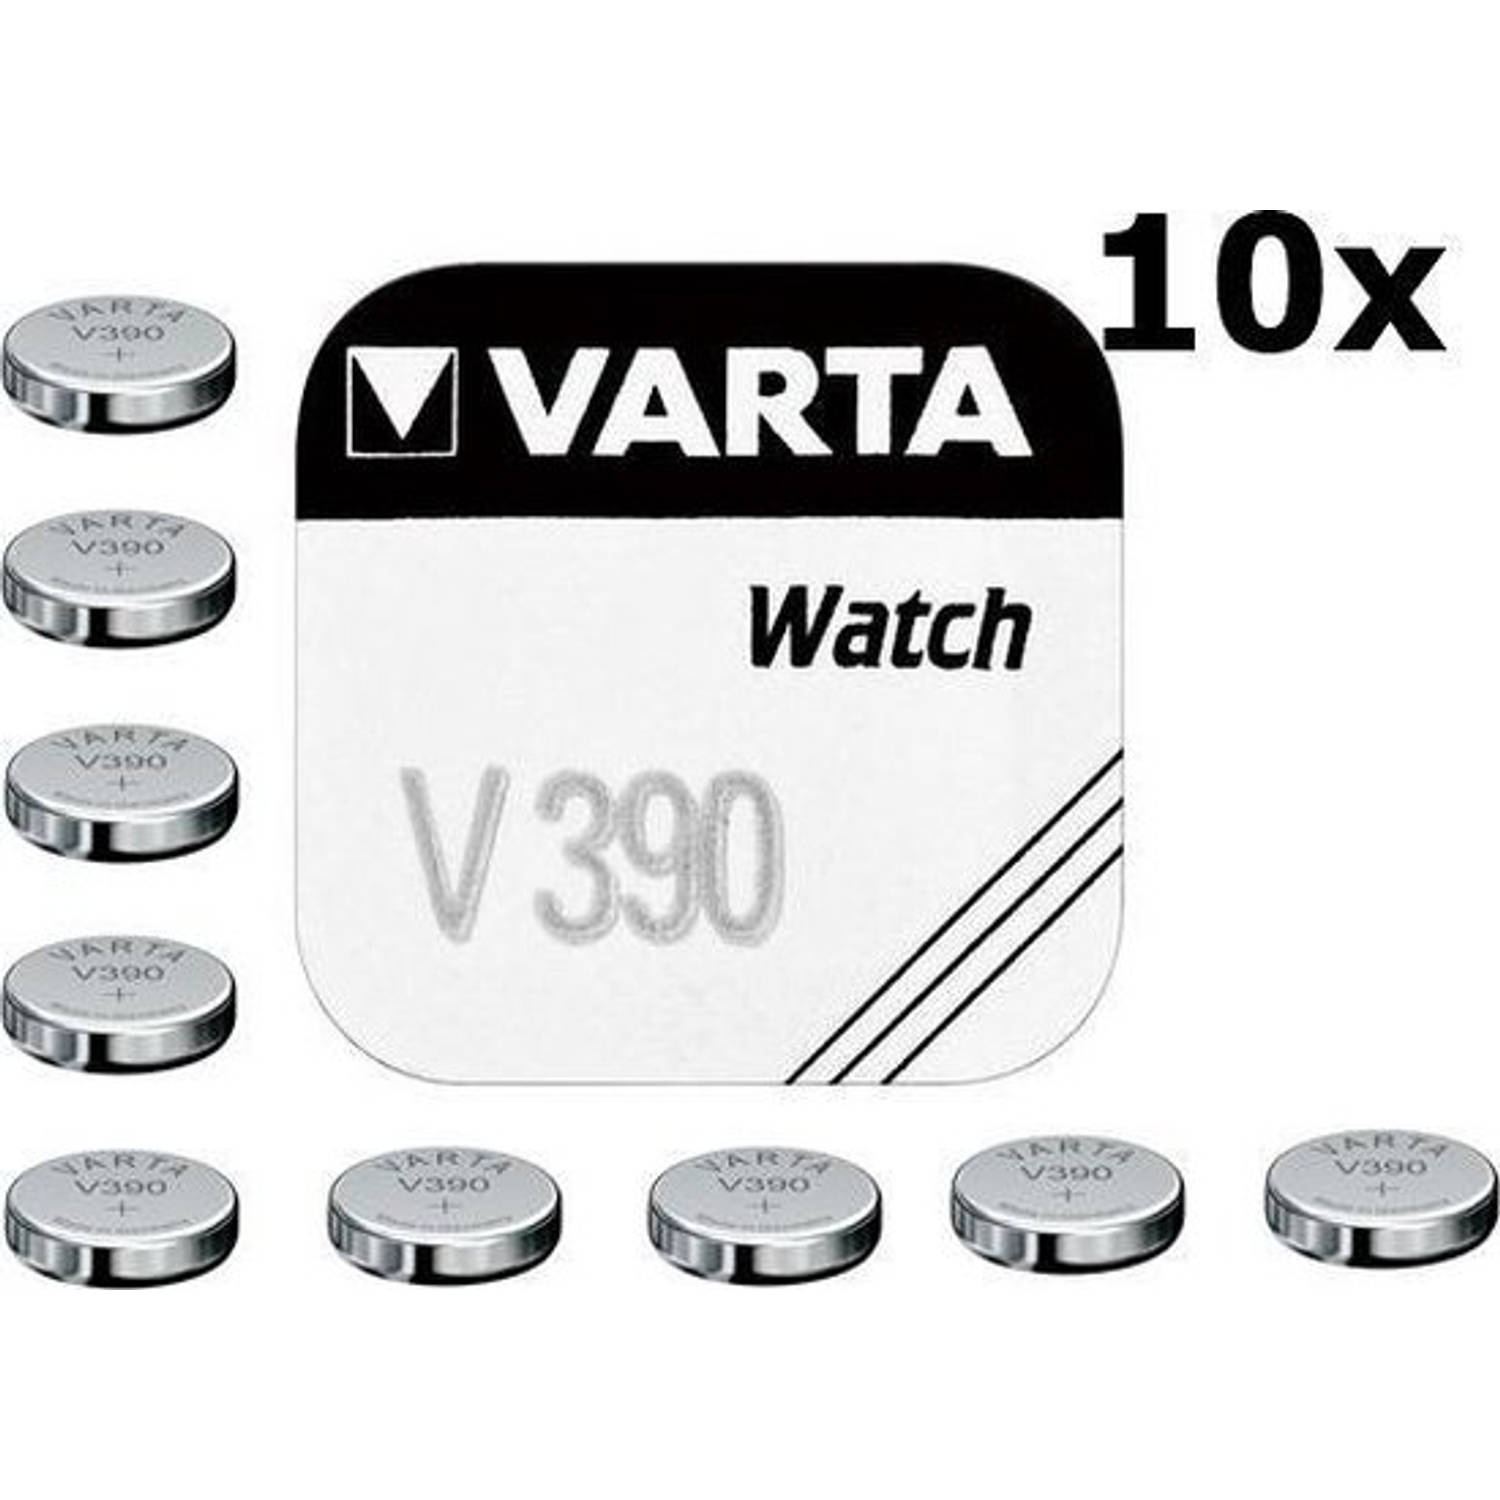 Varta V390 80mAh 1.55V knoopcel batterij - 10 stuks